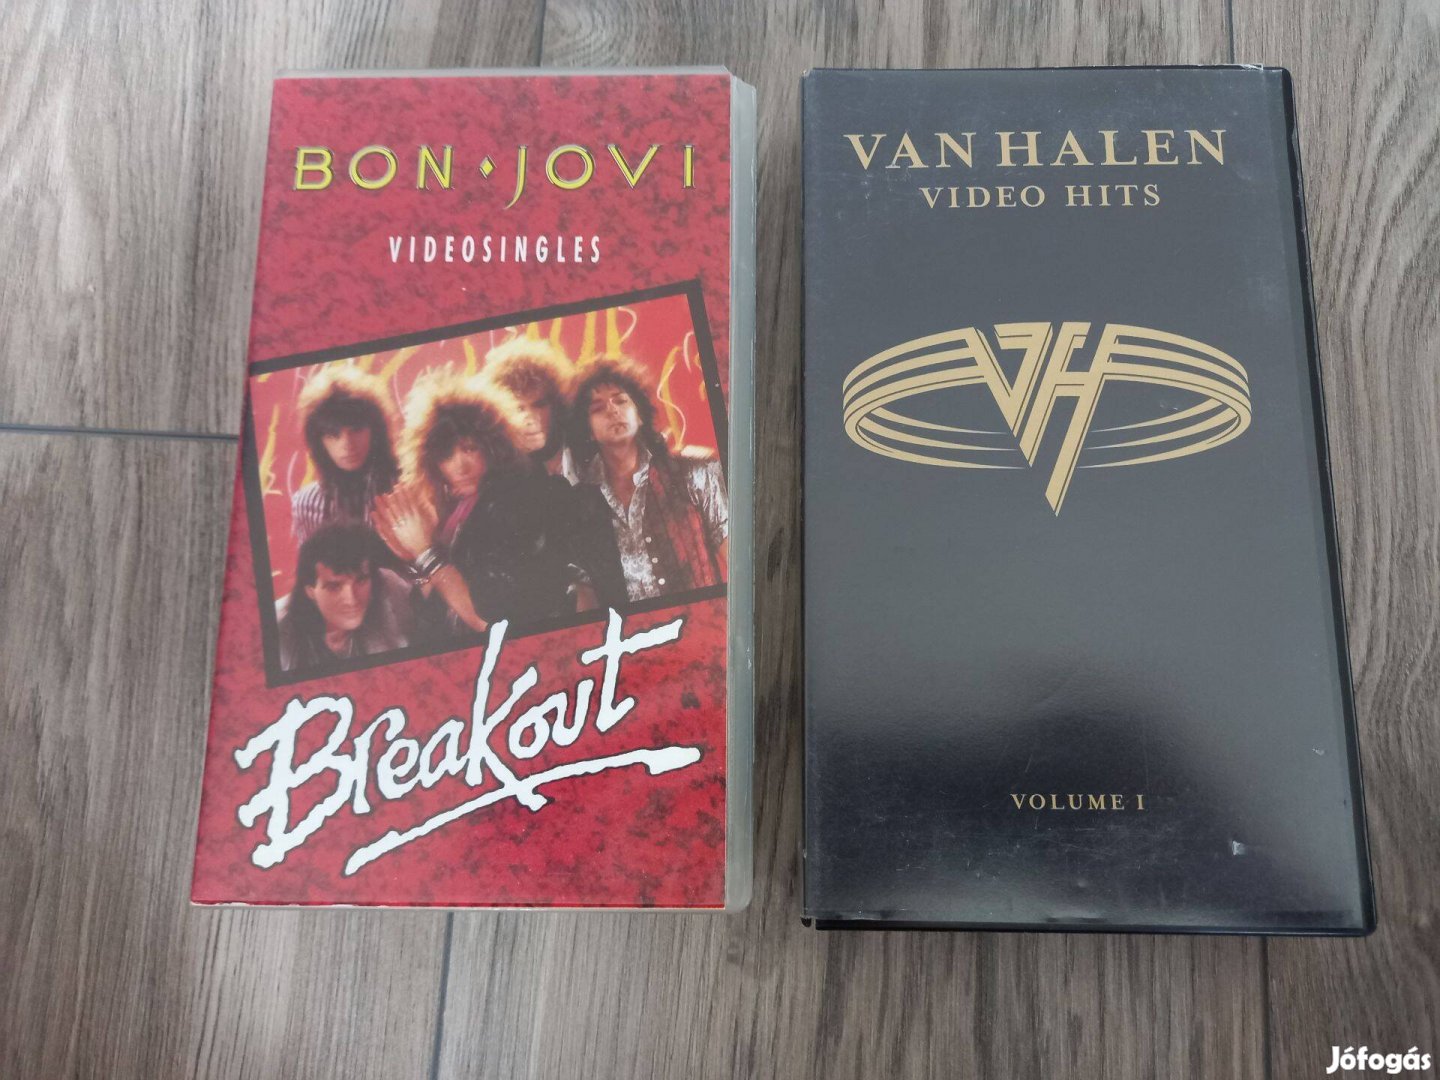 Van Halen, Bon Jovi műsoros vhs kazetta. hifi